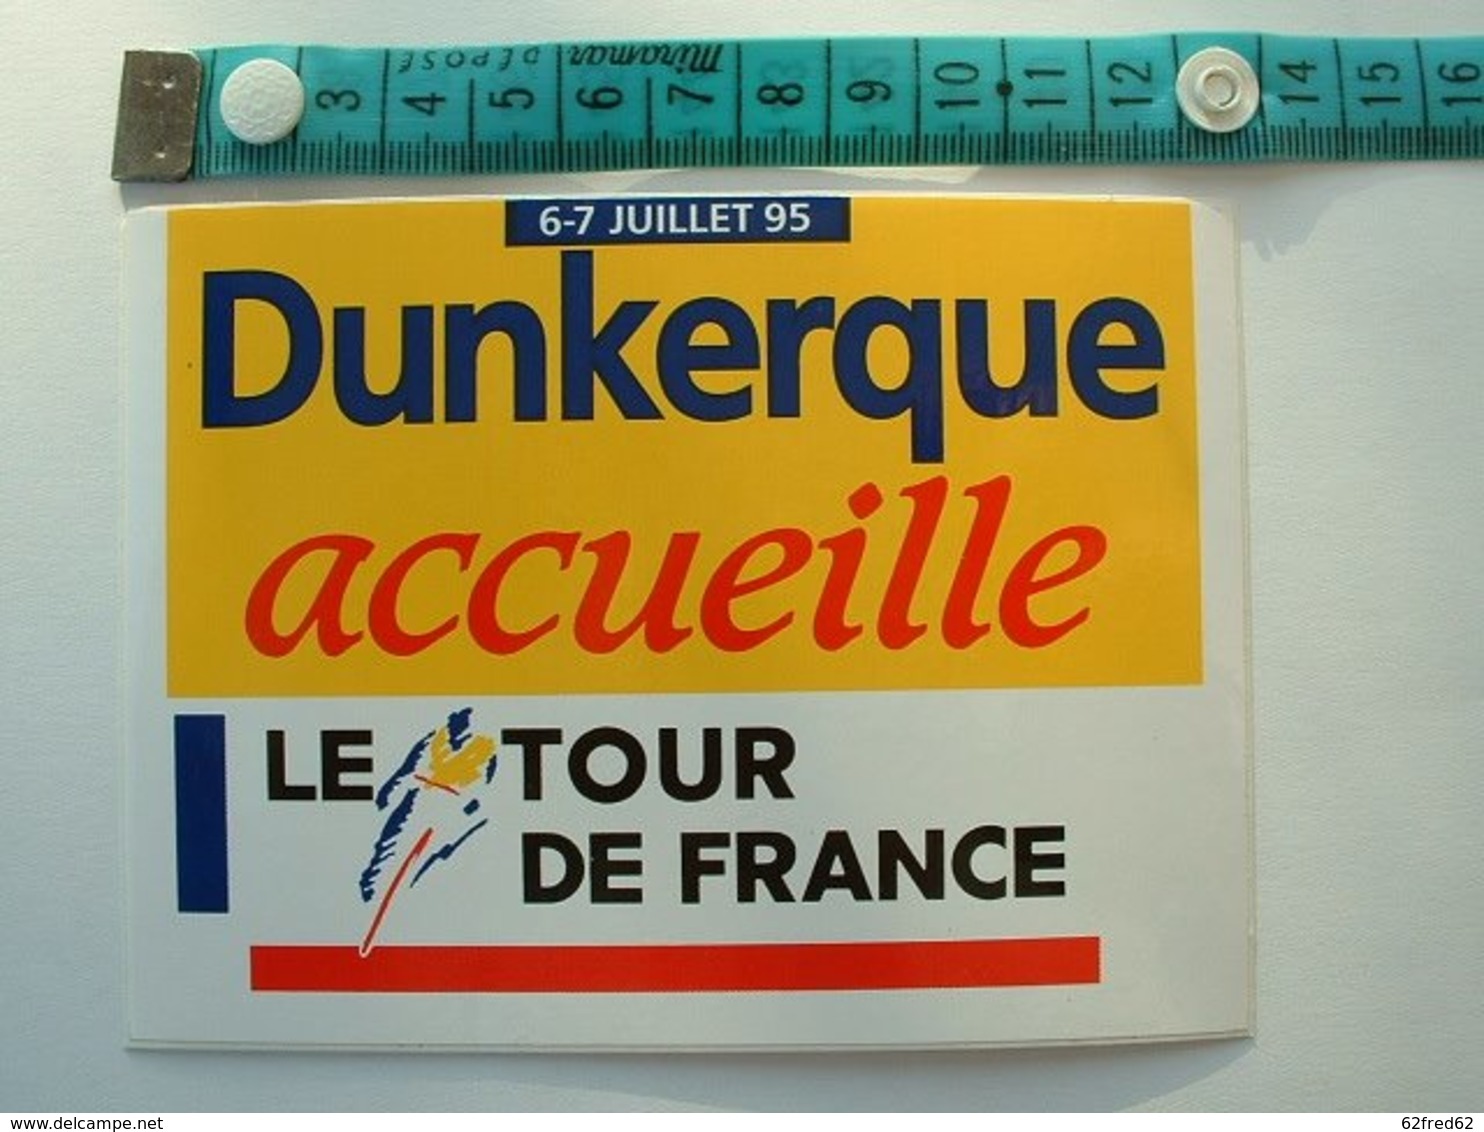 AUTOCOLLANT CYCLISME - DUNKERQUE ACCEUILLE LE TROUR DE FRANCE 95 - Aufkleber